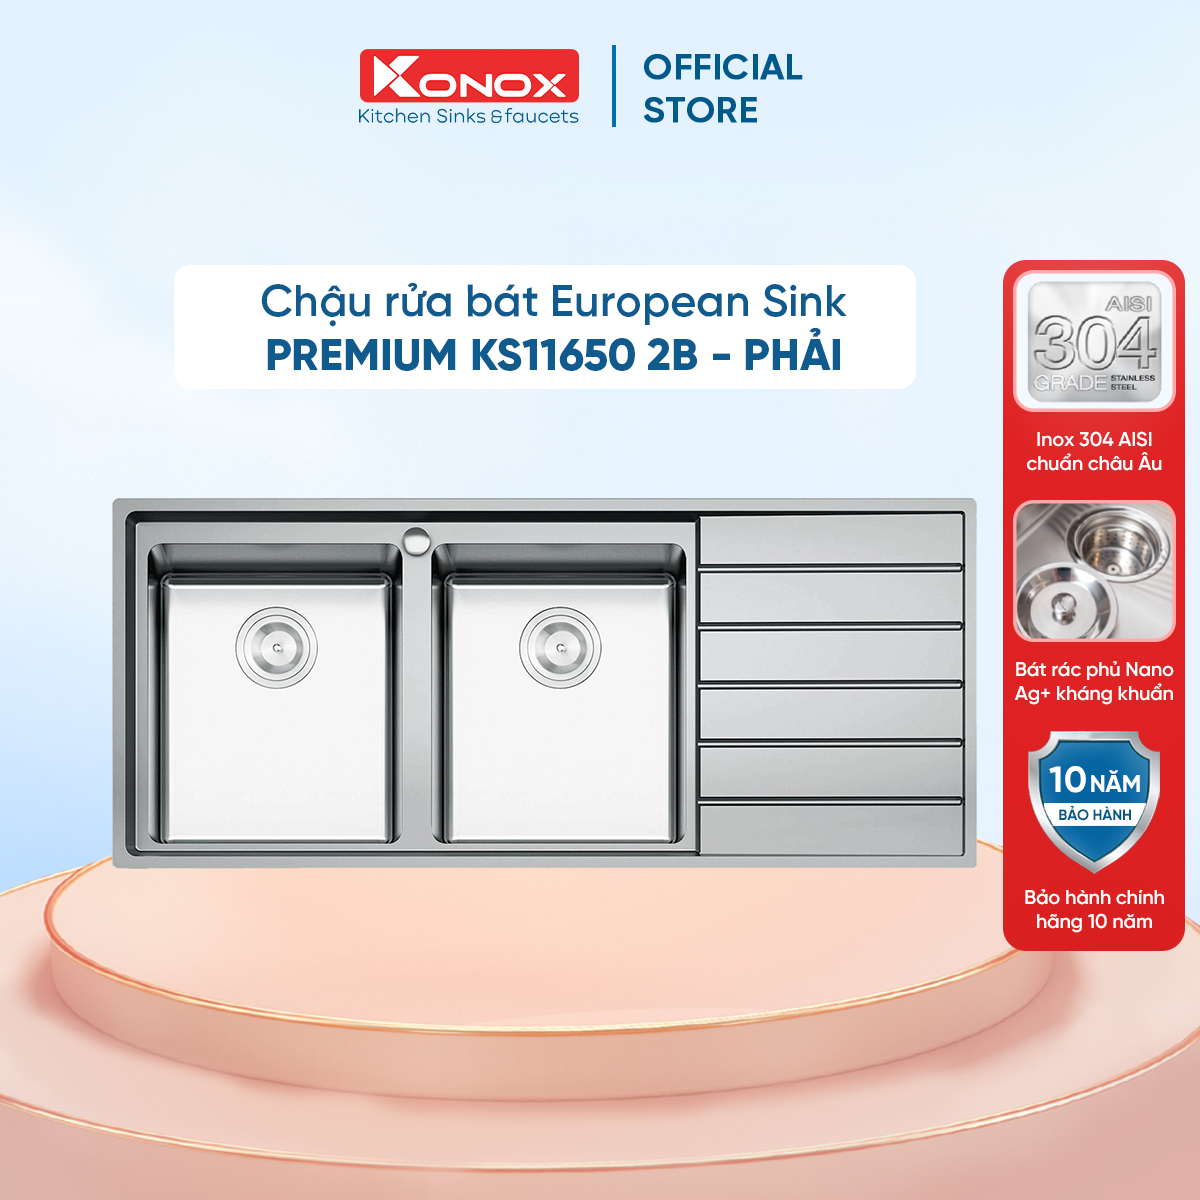 Chậu rửa bát Konox, European Series, Model Premium KS11650 2B , Inox 304AISI tiêu chuẩn châu Âu, 1160x500x215(mm), Hàng chính hãng